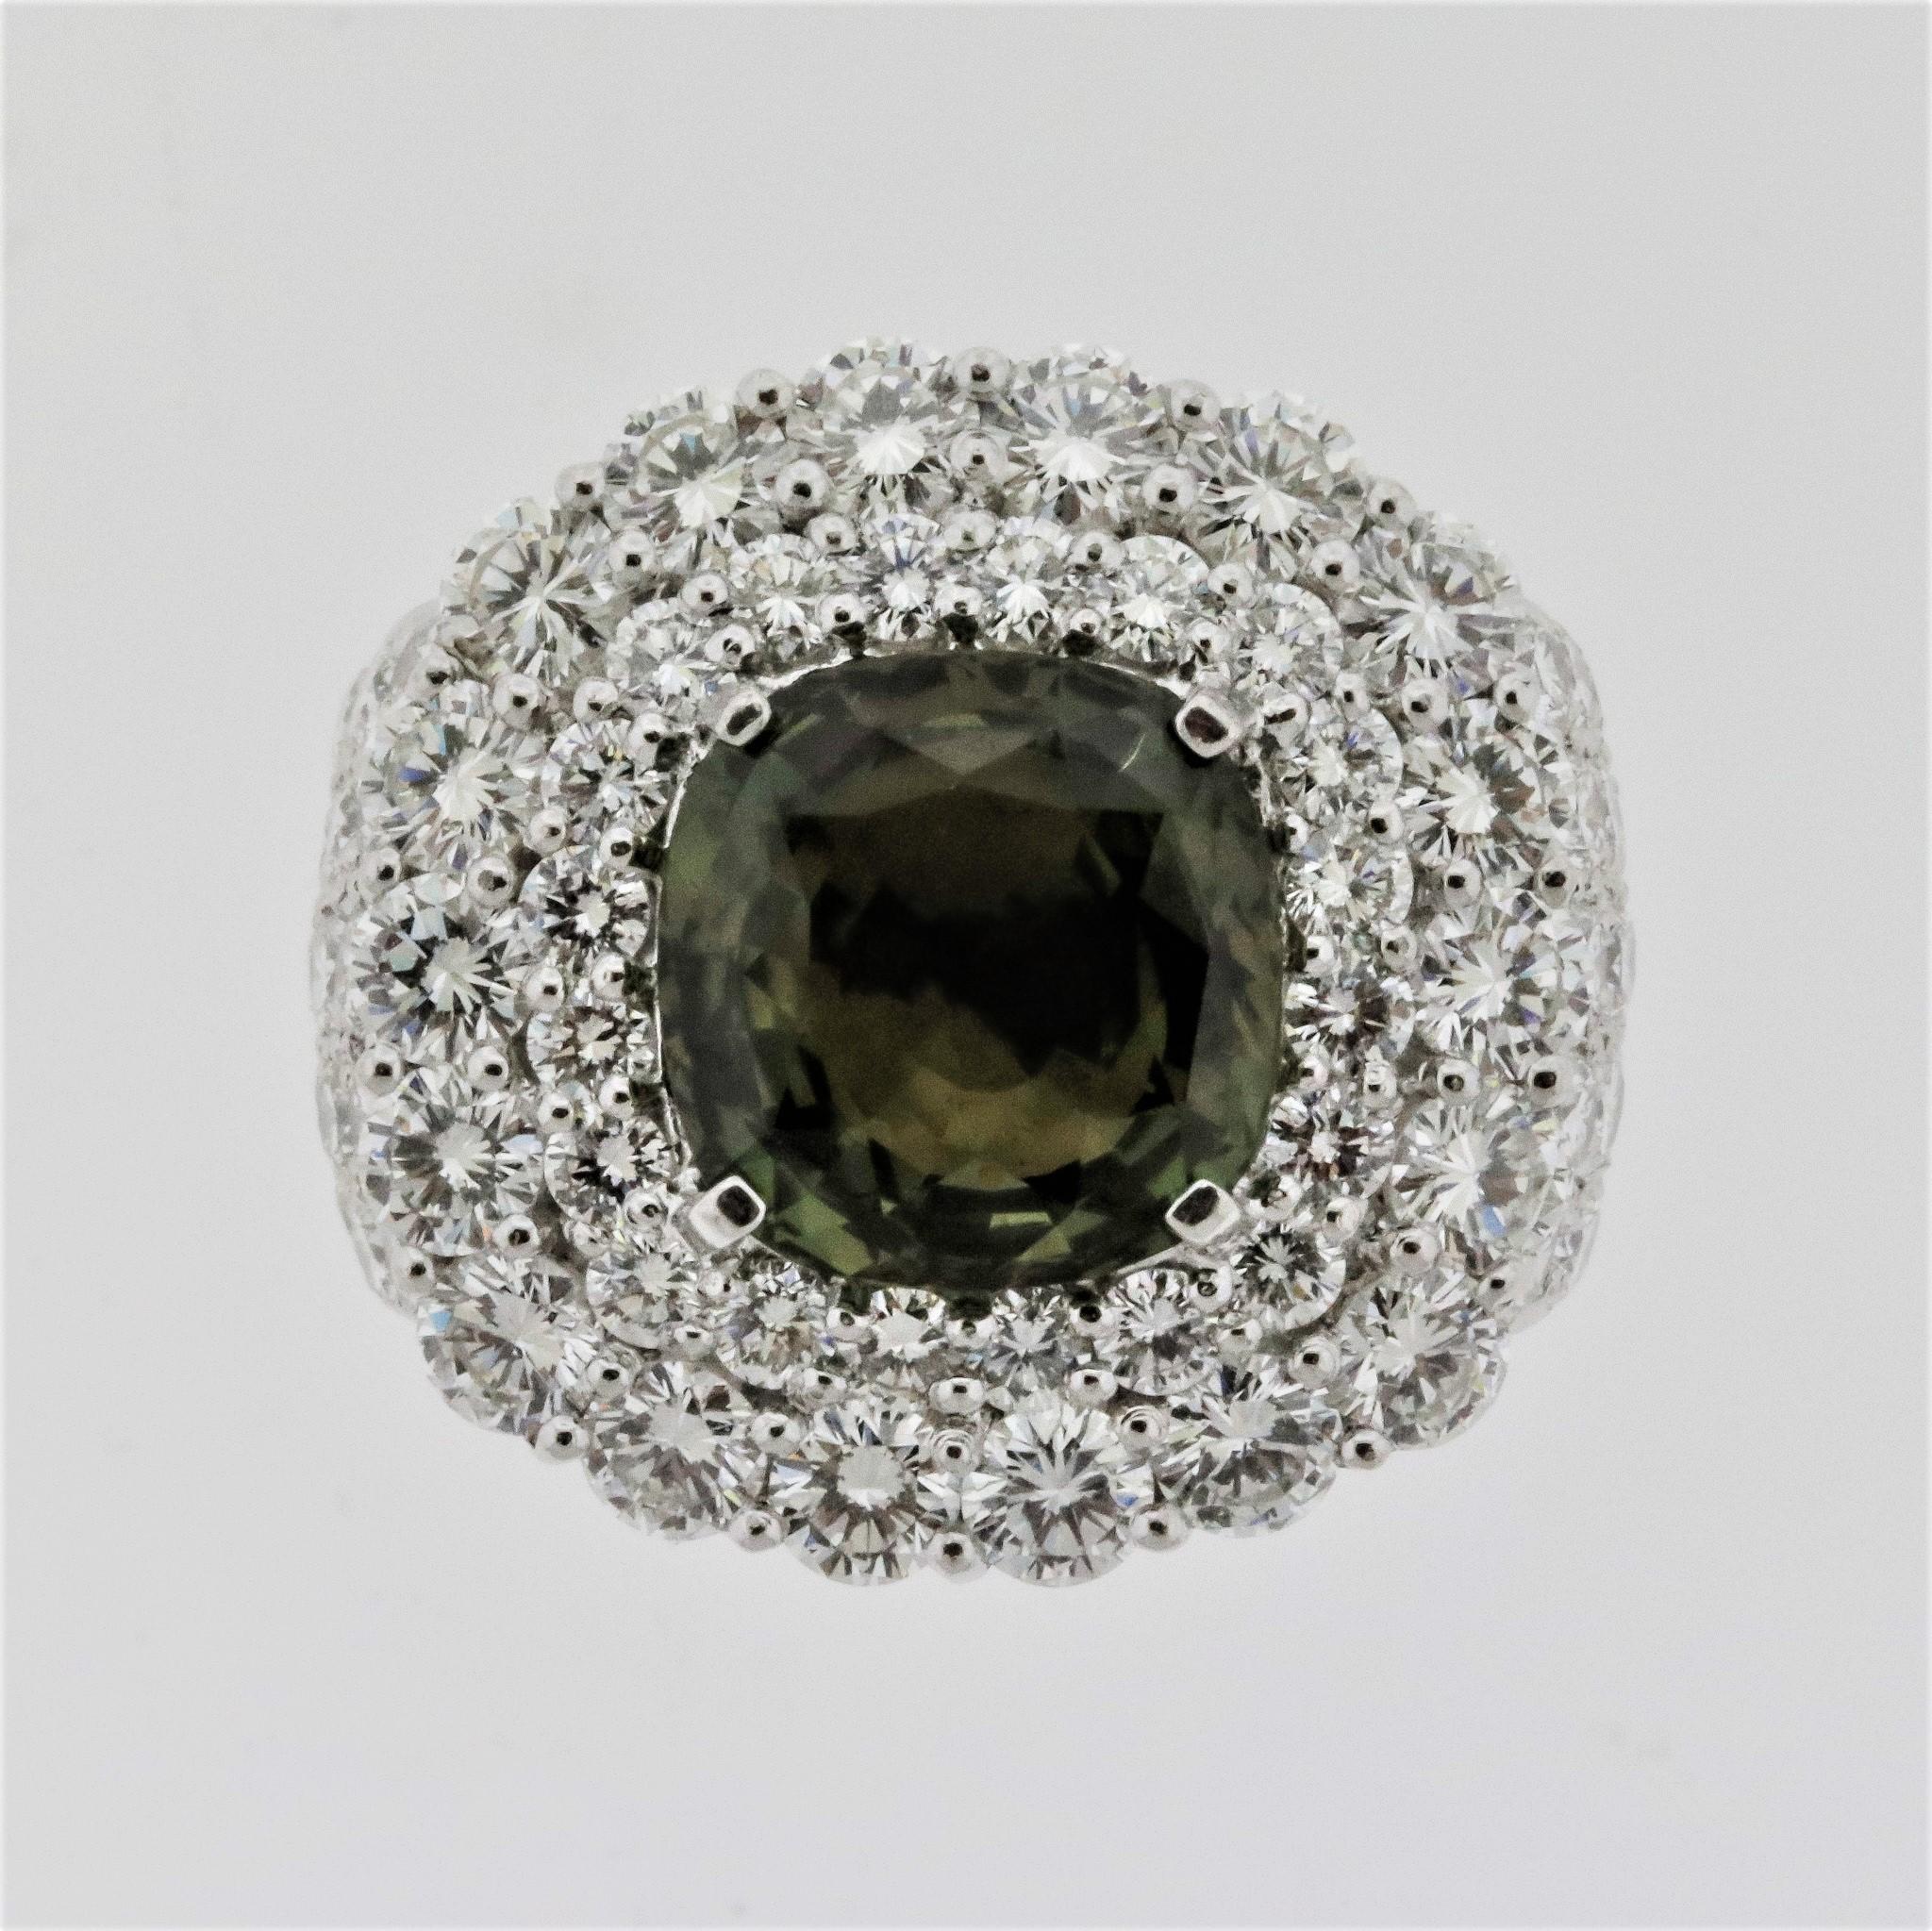 Une bague sexy présentant une alexandrite naturelle de 4,43 carats et une couverture de diamants blancs brillants. L'alexandrite est en forme de coussin et présente un grand changement de couleur lorsqu'elle passe de la lumière blanche à la lumière